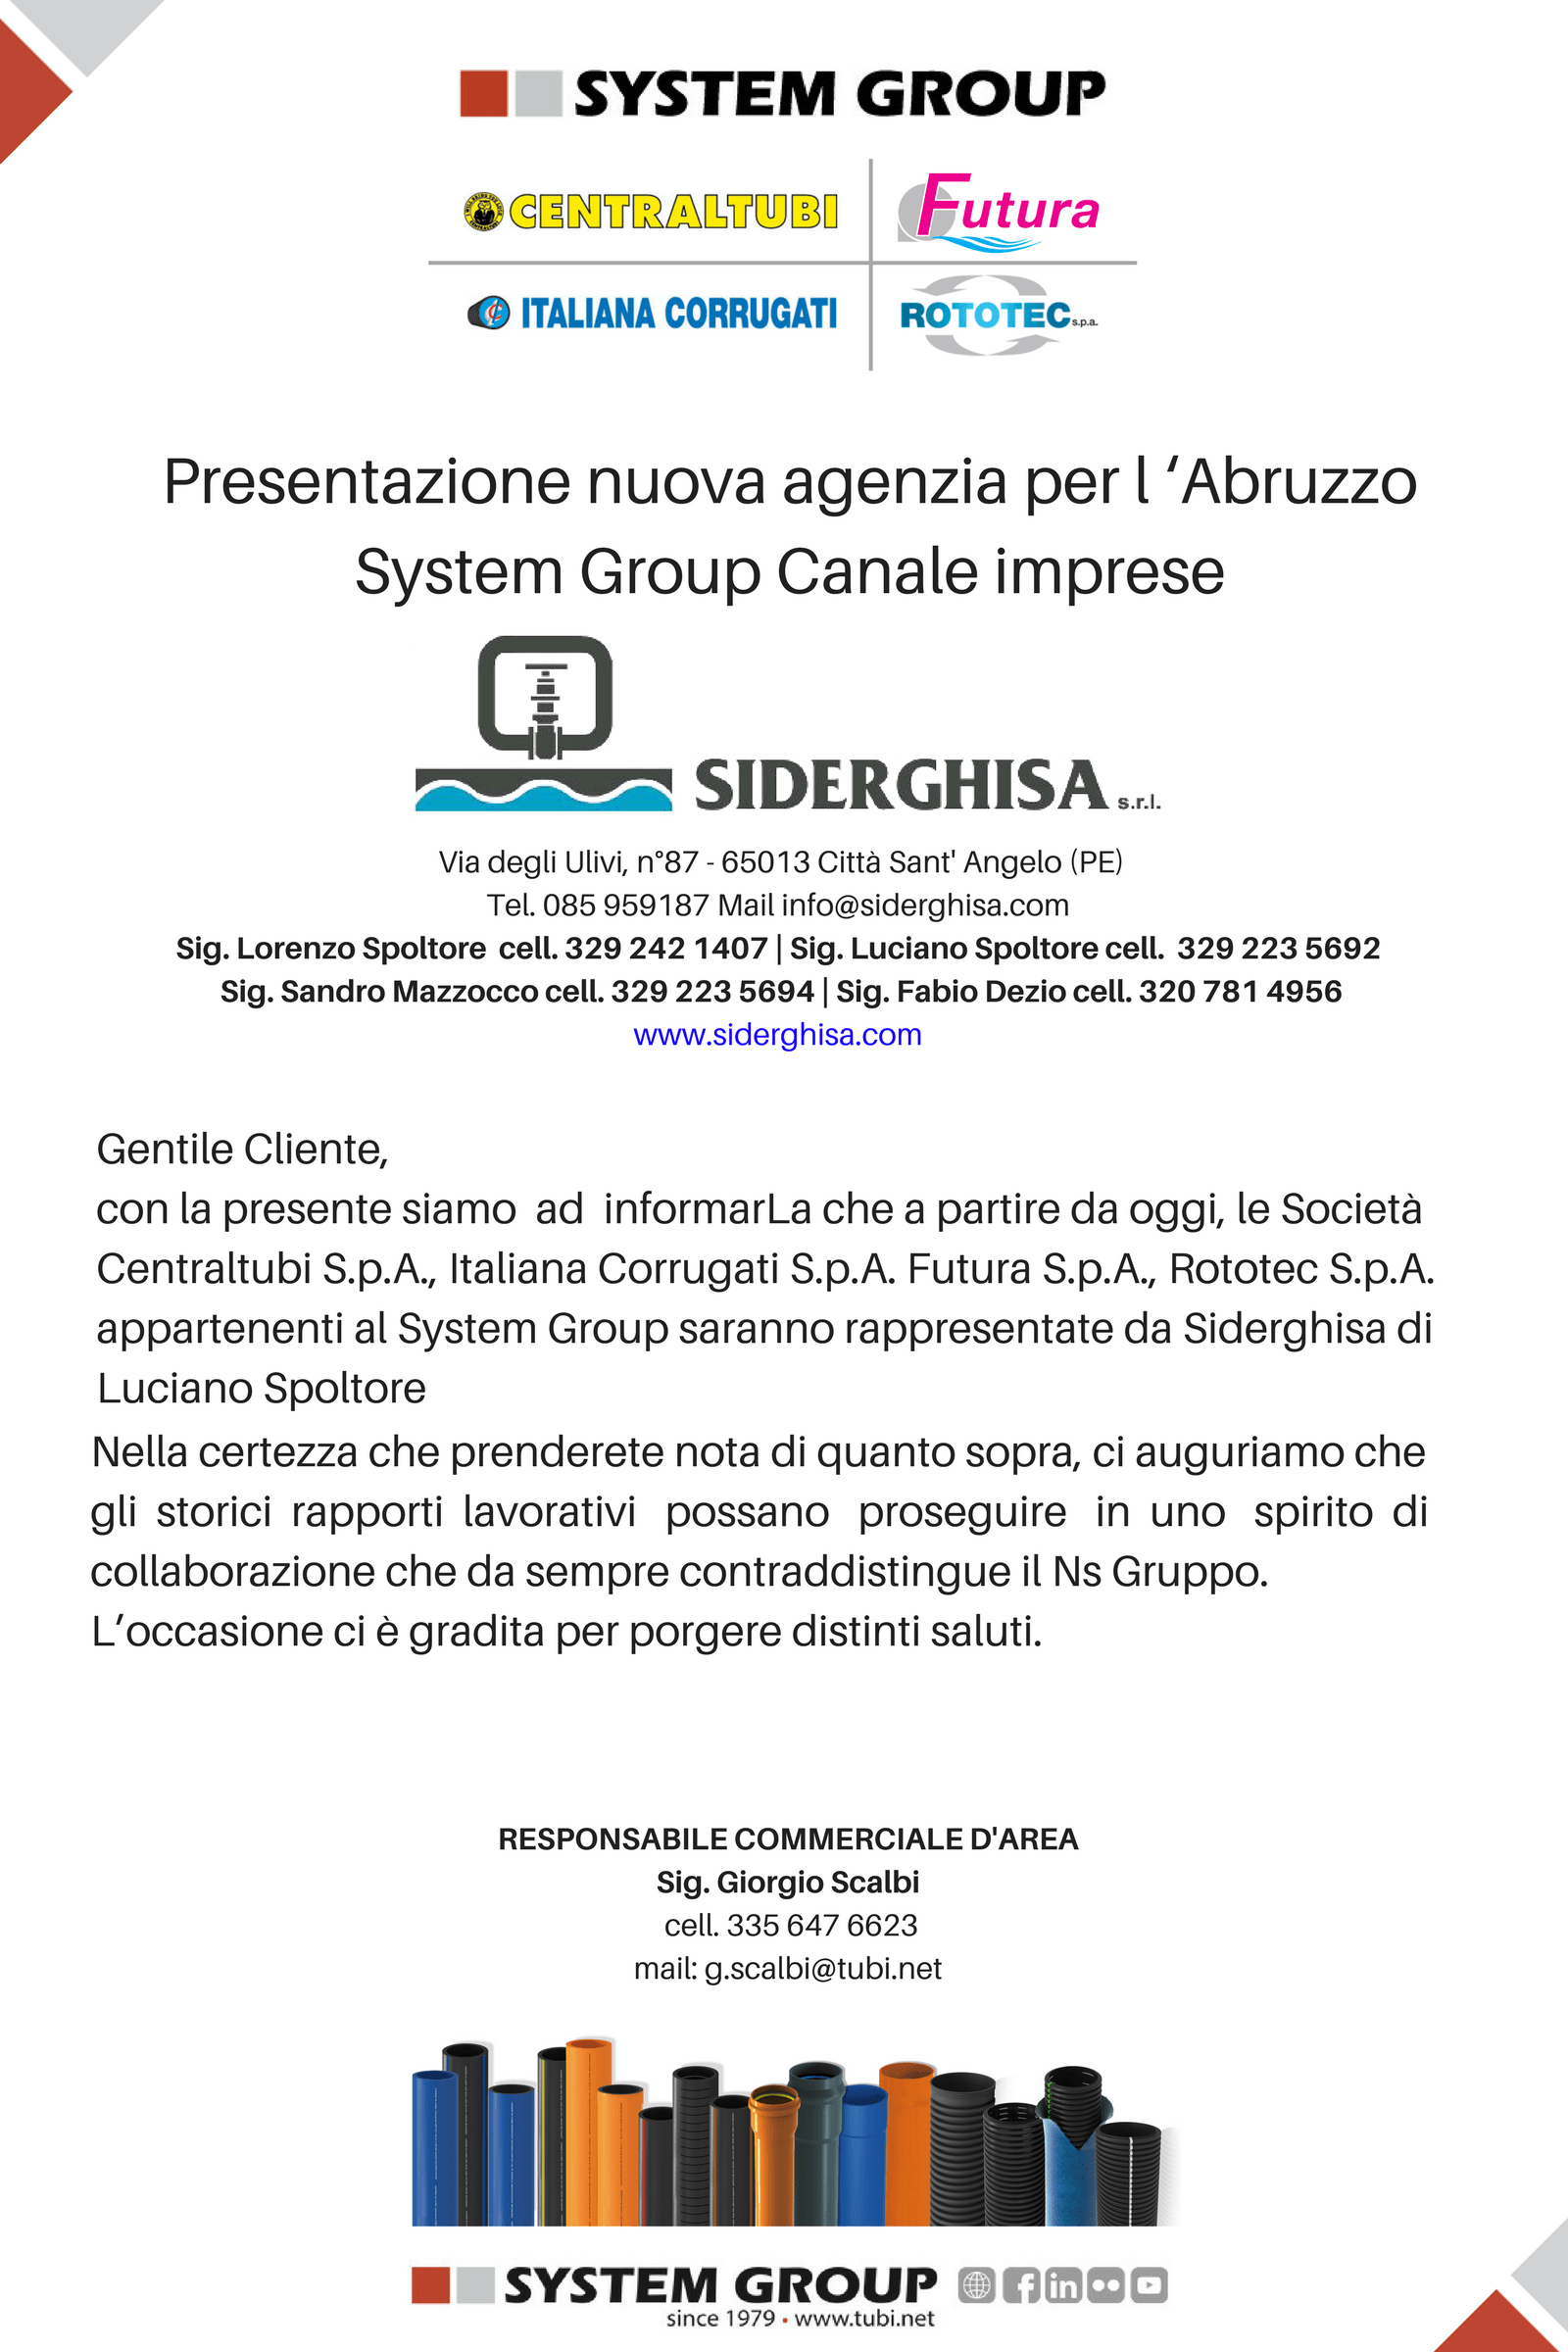 SystemGroup Presentazione nuova agenzia per l'Abruzzo